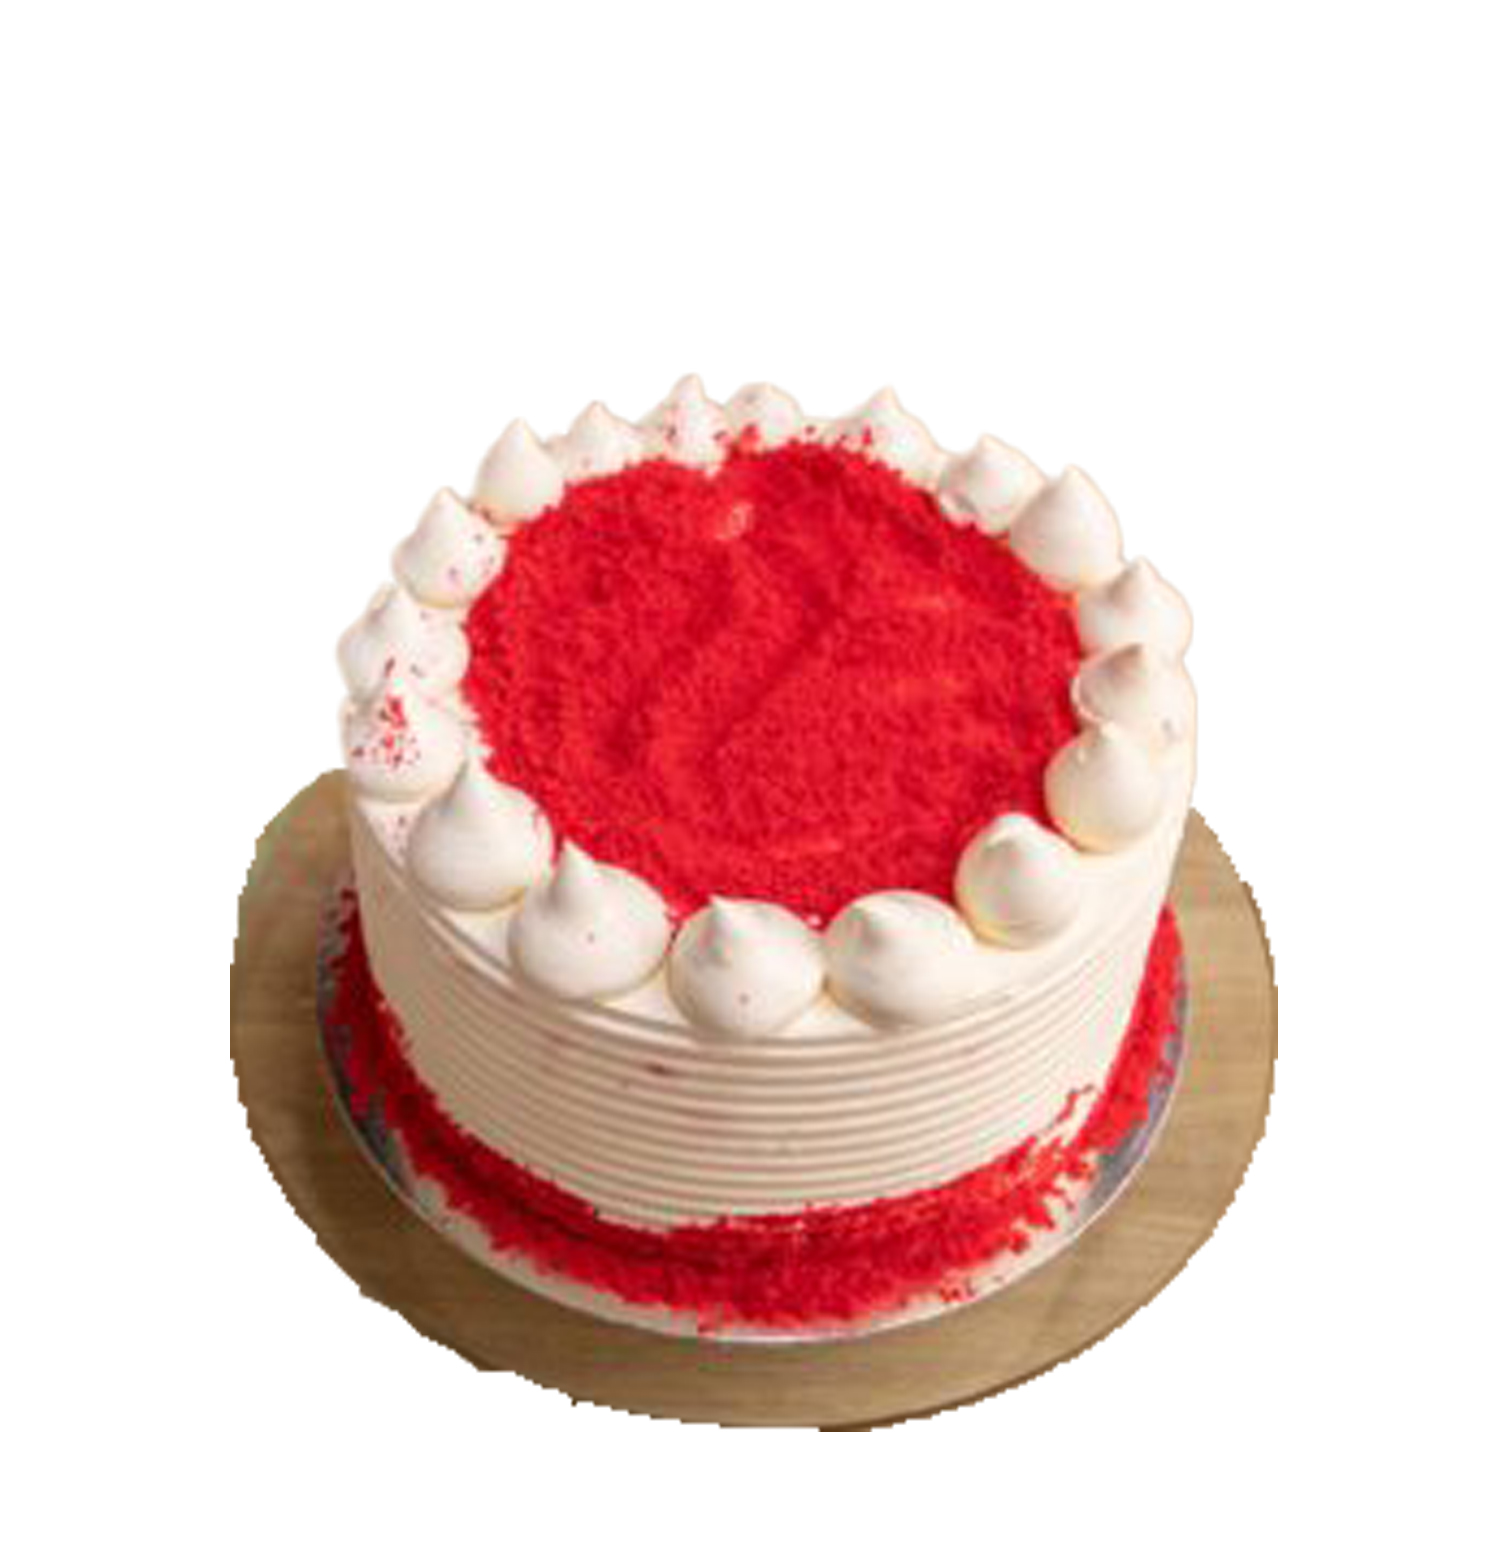 Eggless Red Velvet Cake - Fabcakes